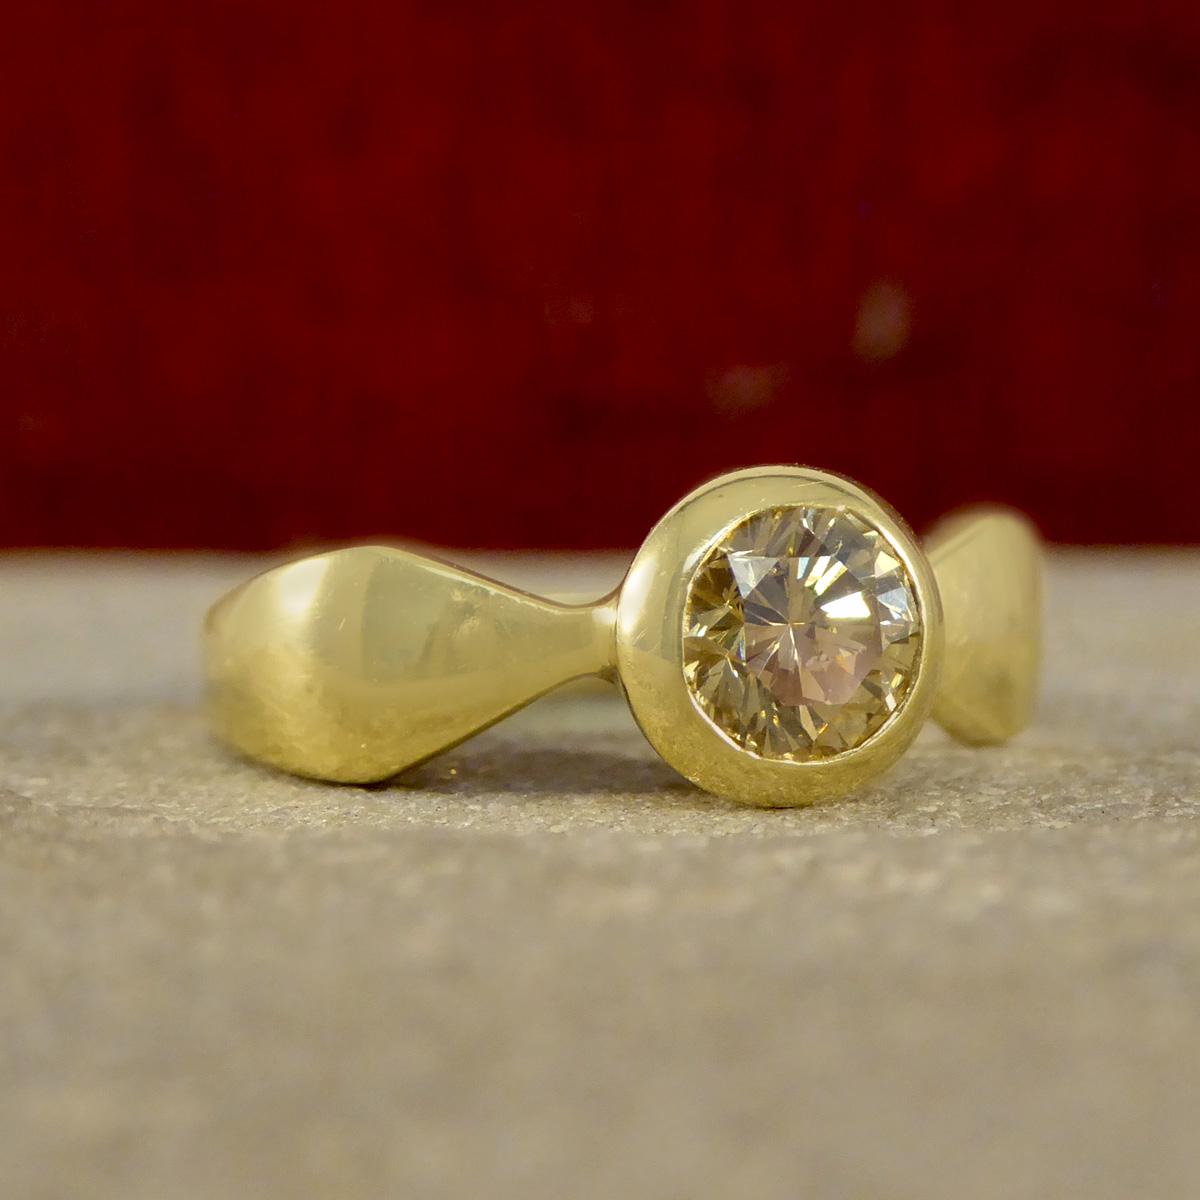 Cette élégante bague en or jaune 18ct sertie d'un diamant châtaigne de 0,60ct est un véritable témoignage de style et de sophistication intemporels. Avec en son cœur un captivant diamant rond de 0,60ct taillé en brillant, cette bague respire la